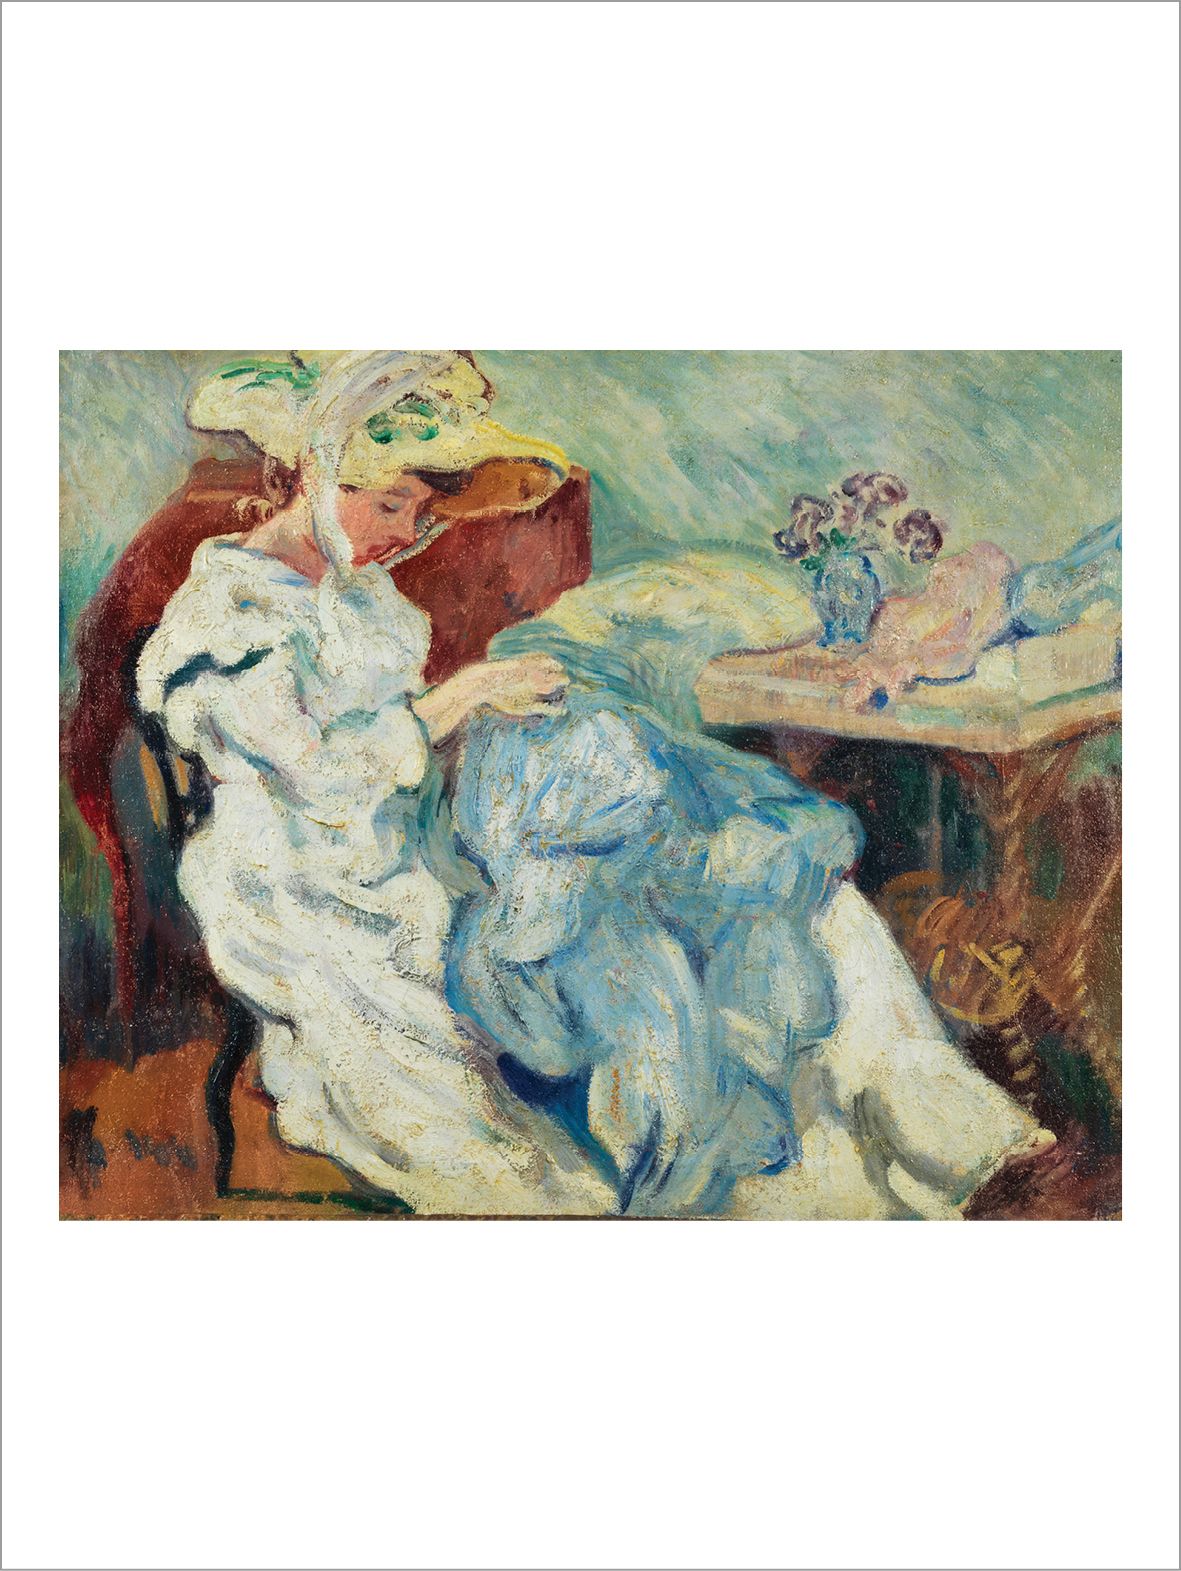 Louis VALTAT (1869-1952) La couture, 1902-1903 circa
Olio su tela.
Olio su tela.&hellip;